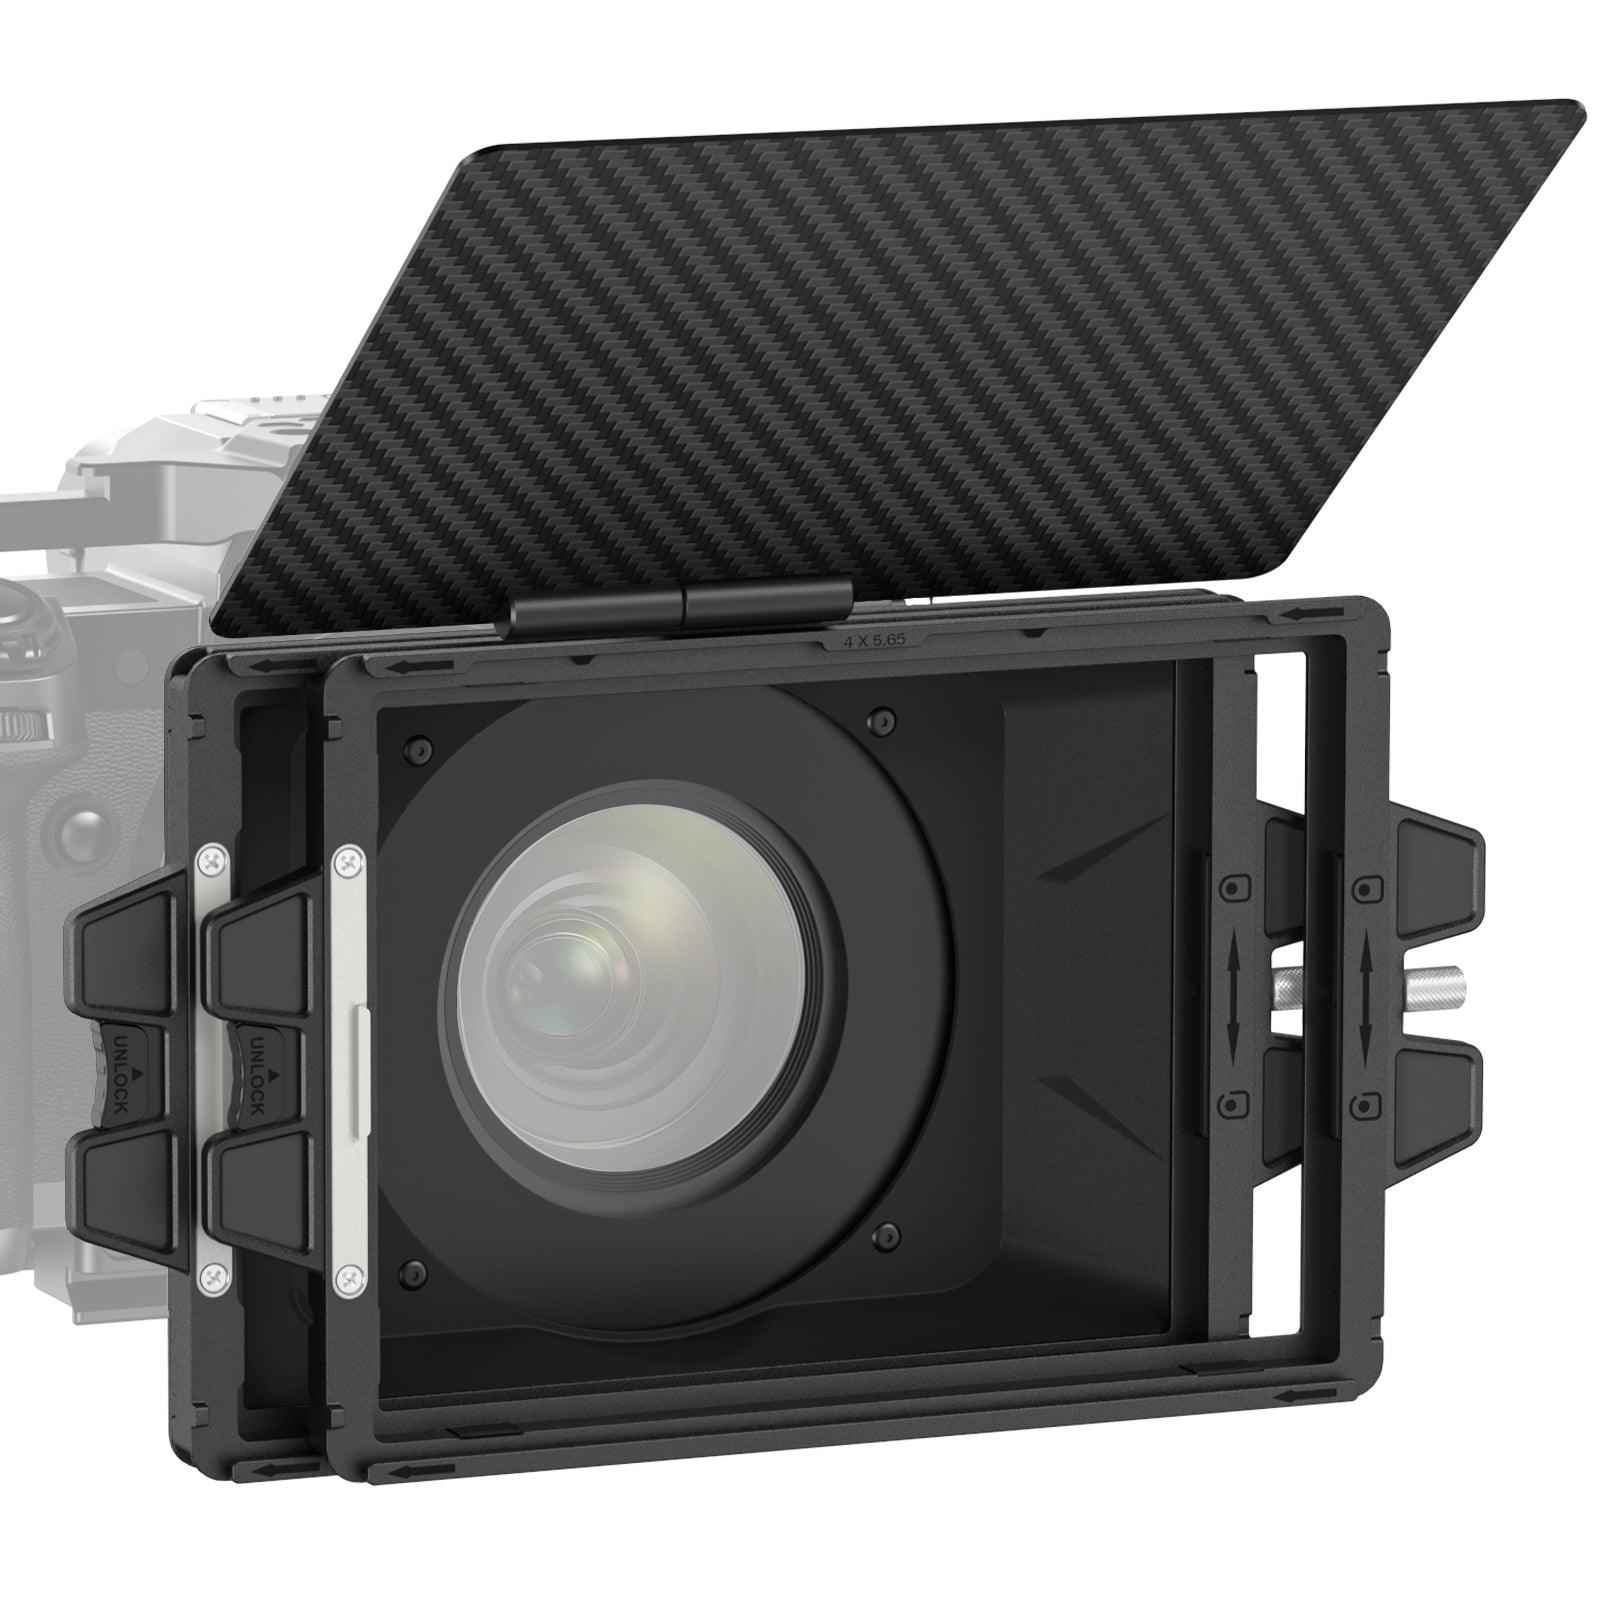 Tilta Mini Matte Box — Lightweight Filter Support for Cameras